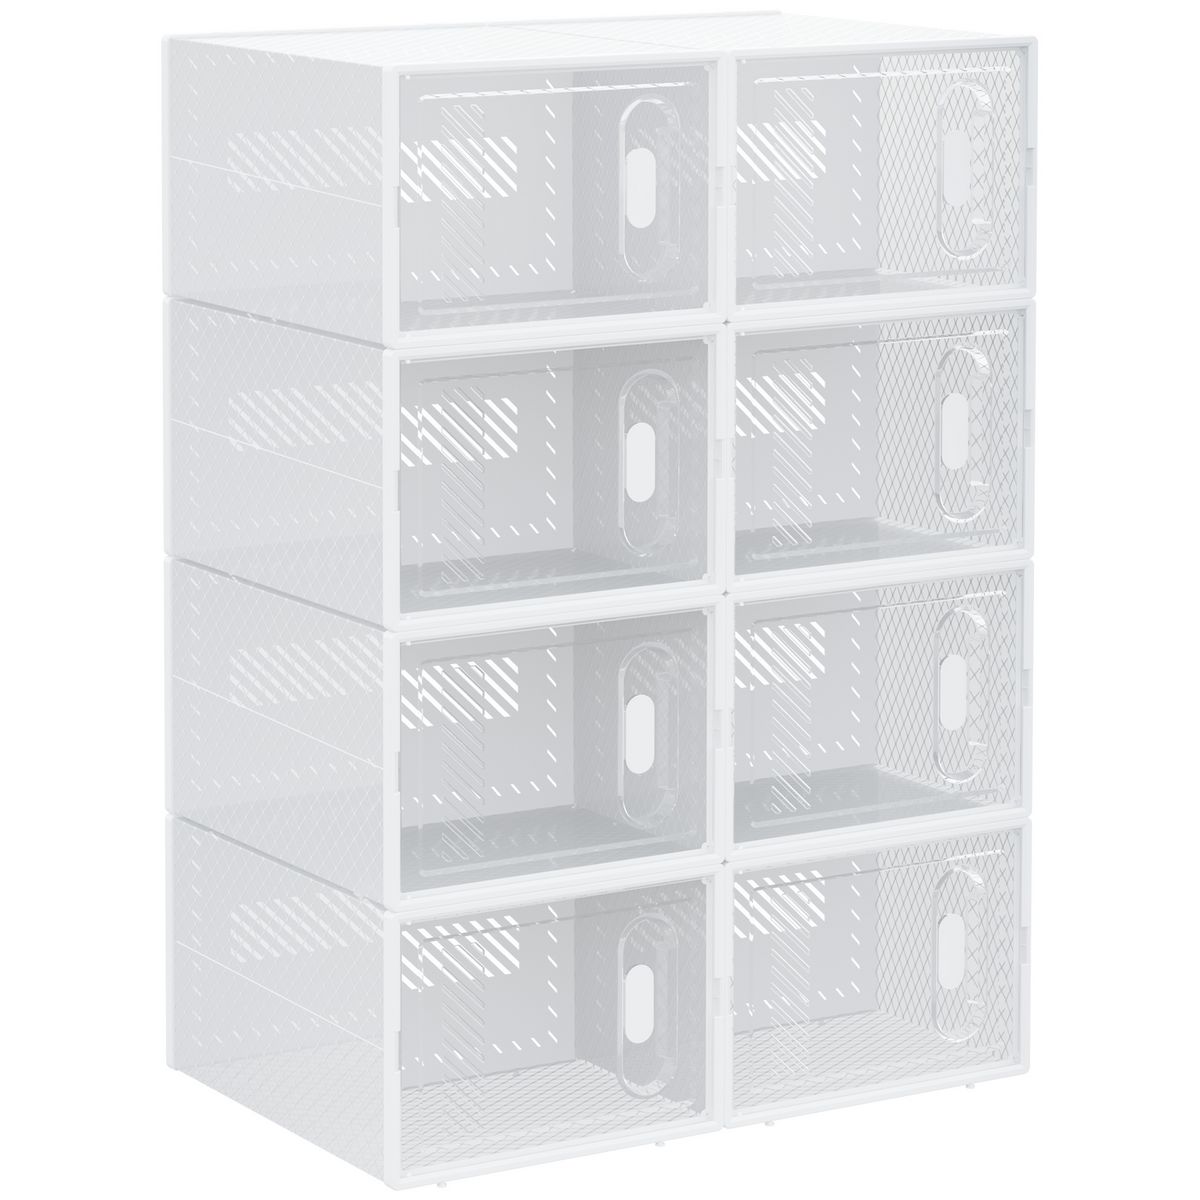 HOMCOM Lot de 8 boites cubes rangement à chaussures modulable avec portes  transparentes - dim. 25L x 35l x 19H cm - PP blanc transparent pas cher 